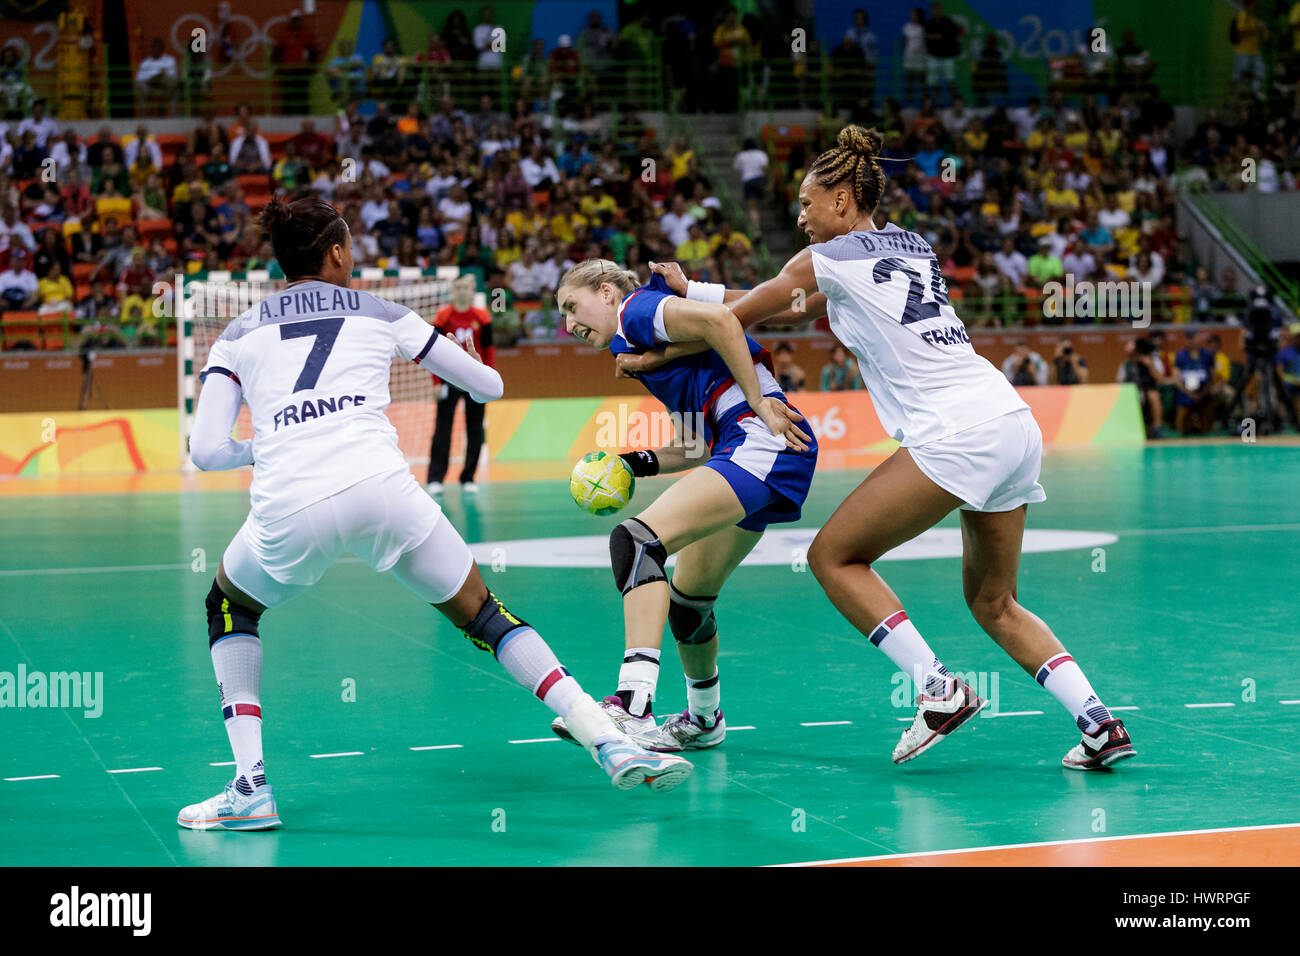 Rio de Janeiro, Brésil. 20 août 2016 Anna Sen (RUS) # 8 défendu par Allison Pineau (FRA) # 7 et Béatrice Edwige (FRA) # 24 dans le handball féminin g Banque D'Images